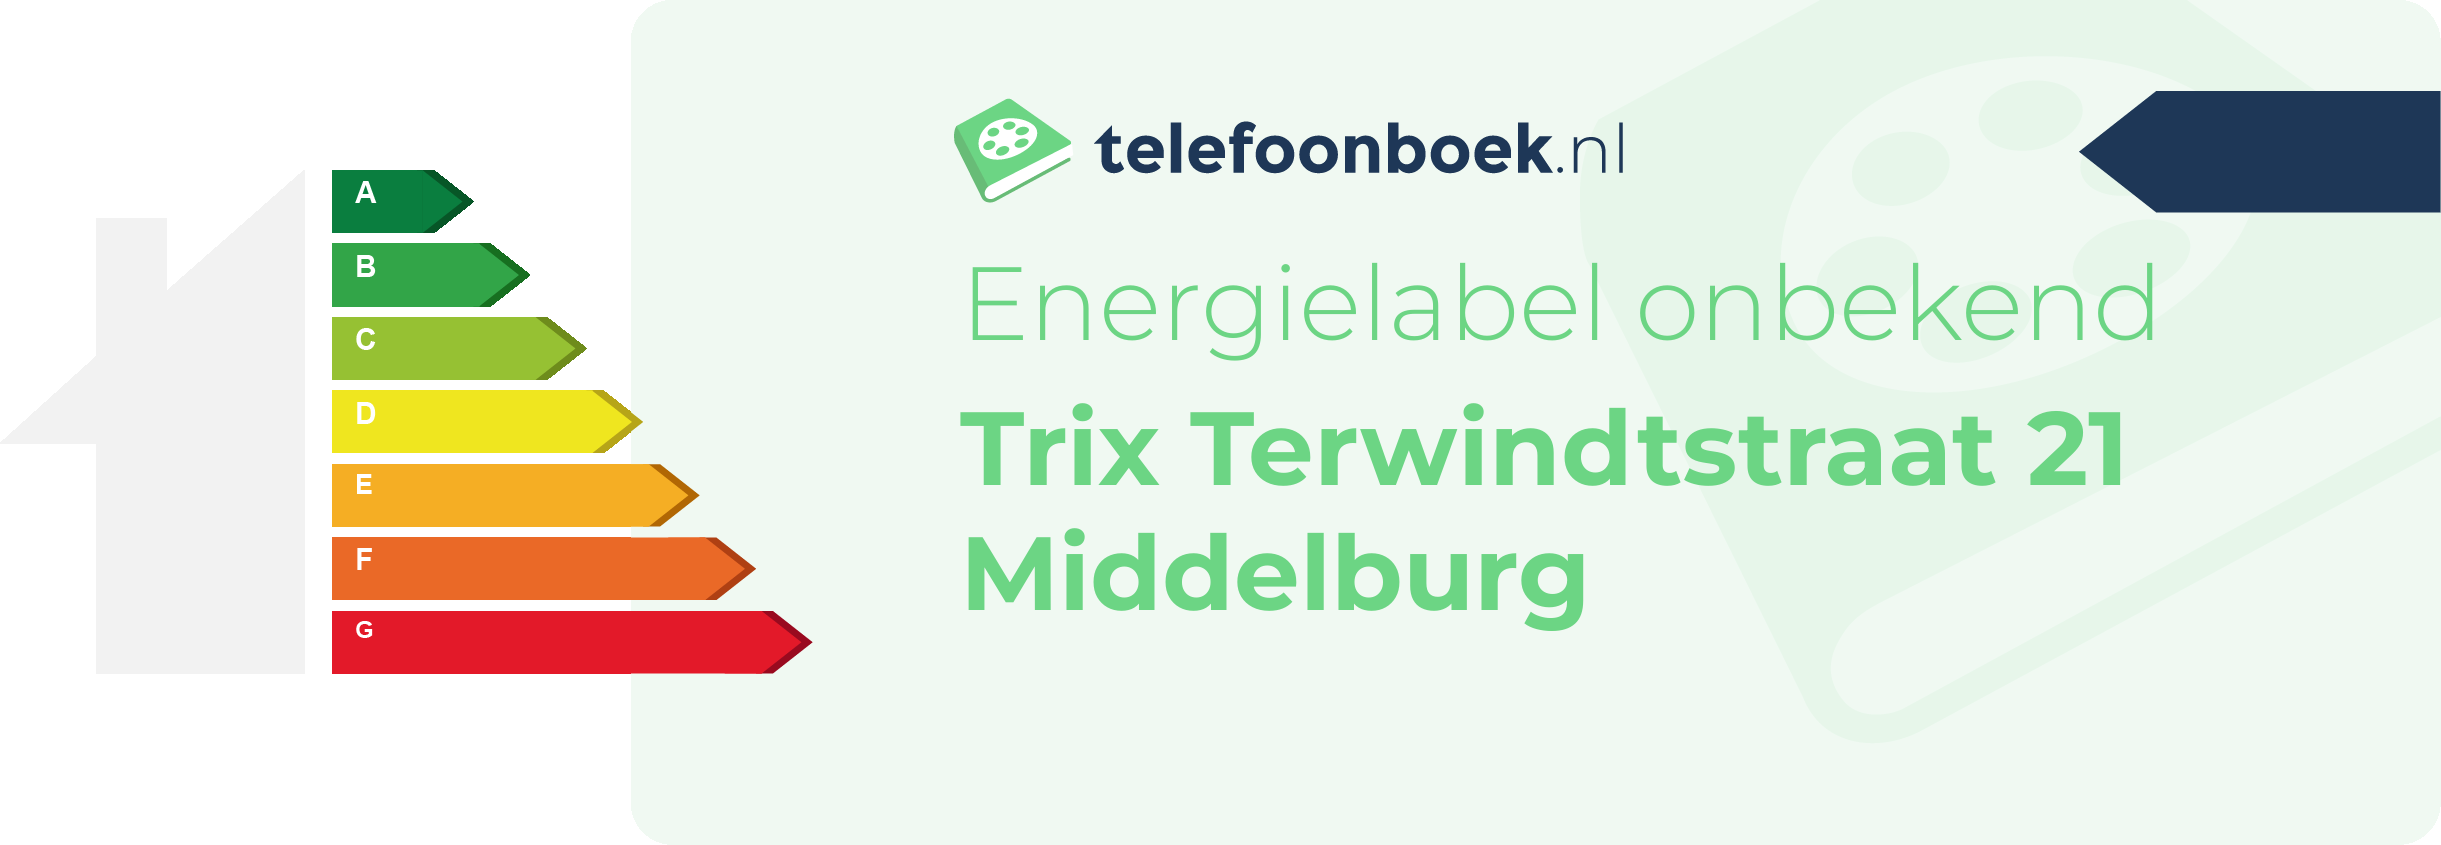 Energielabel Trix Terwindtstraat 21 Middelburg